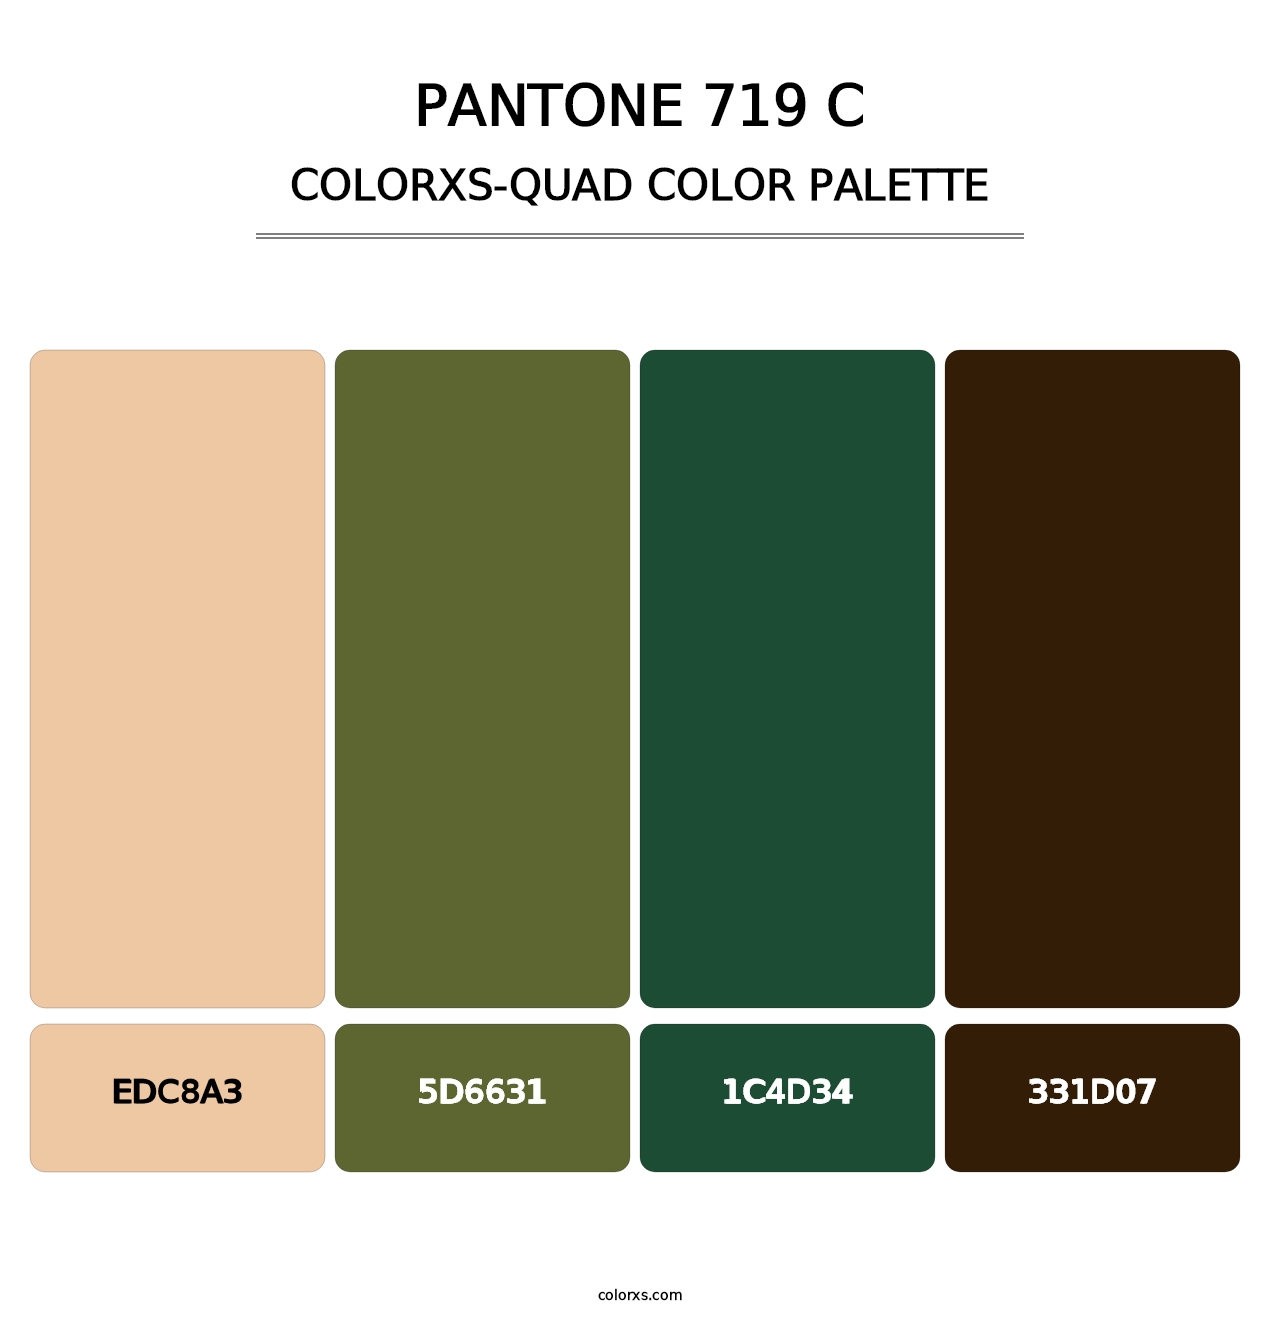 PANTONE 719 C - Colorxs Quad Palette